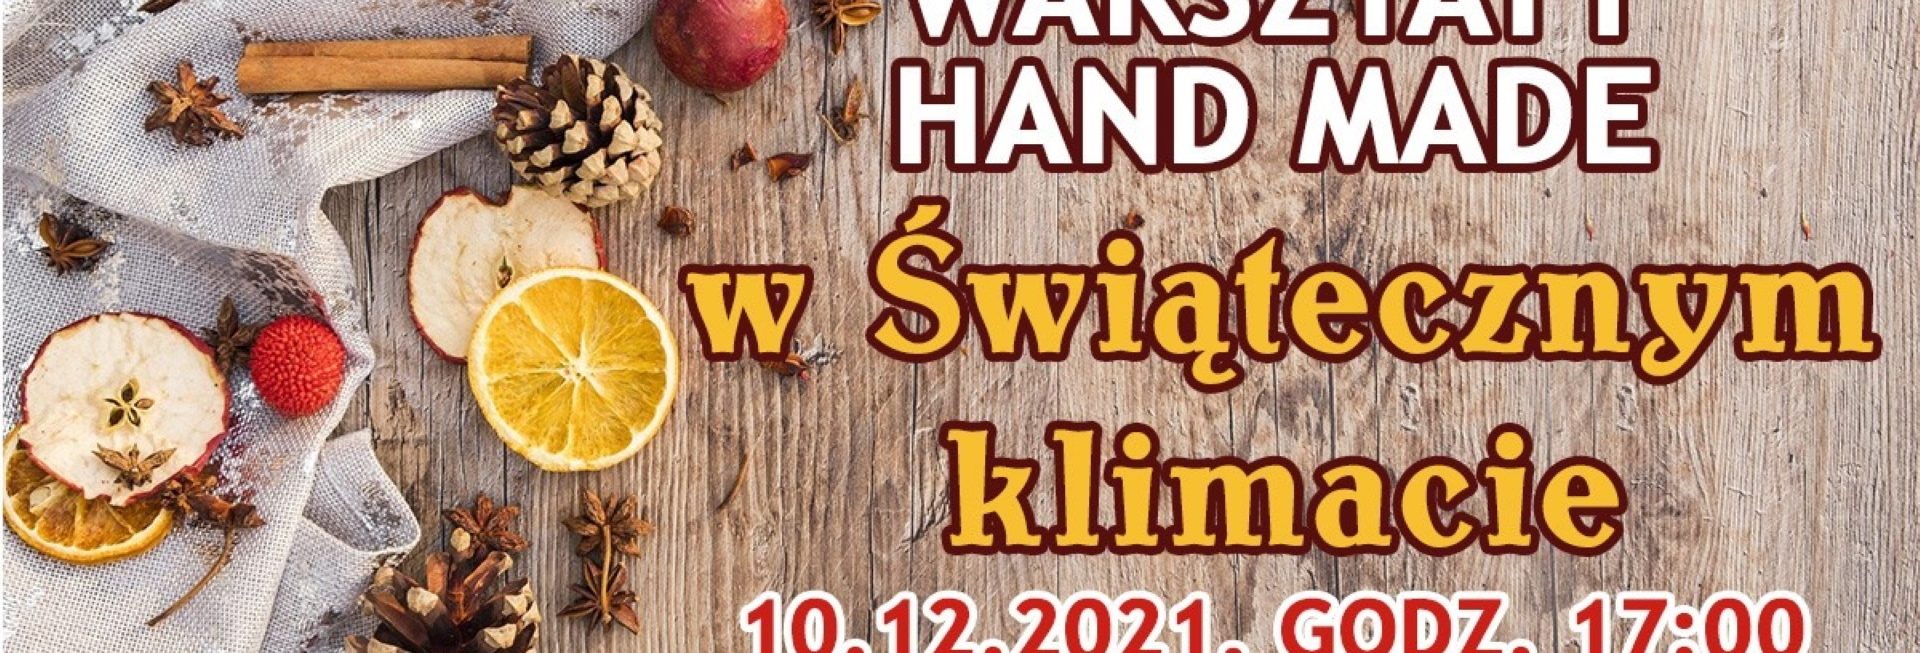 Plakat graficzny zapraszający do Elbląga na warsztaty Hand Made "W świątecznym klimacie" - Elbląg 2021.